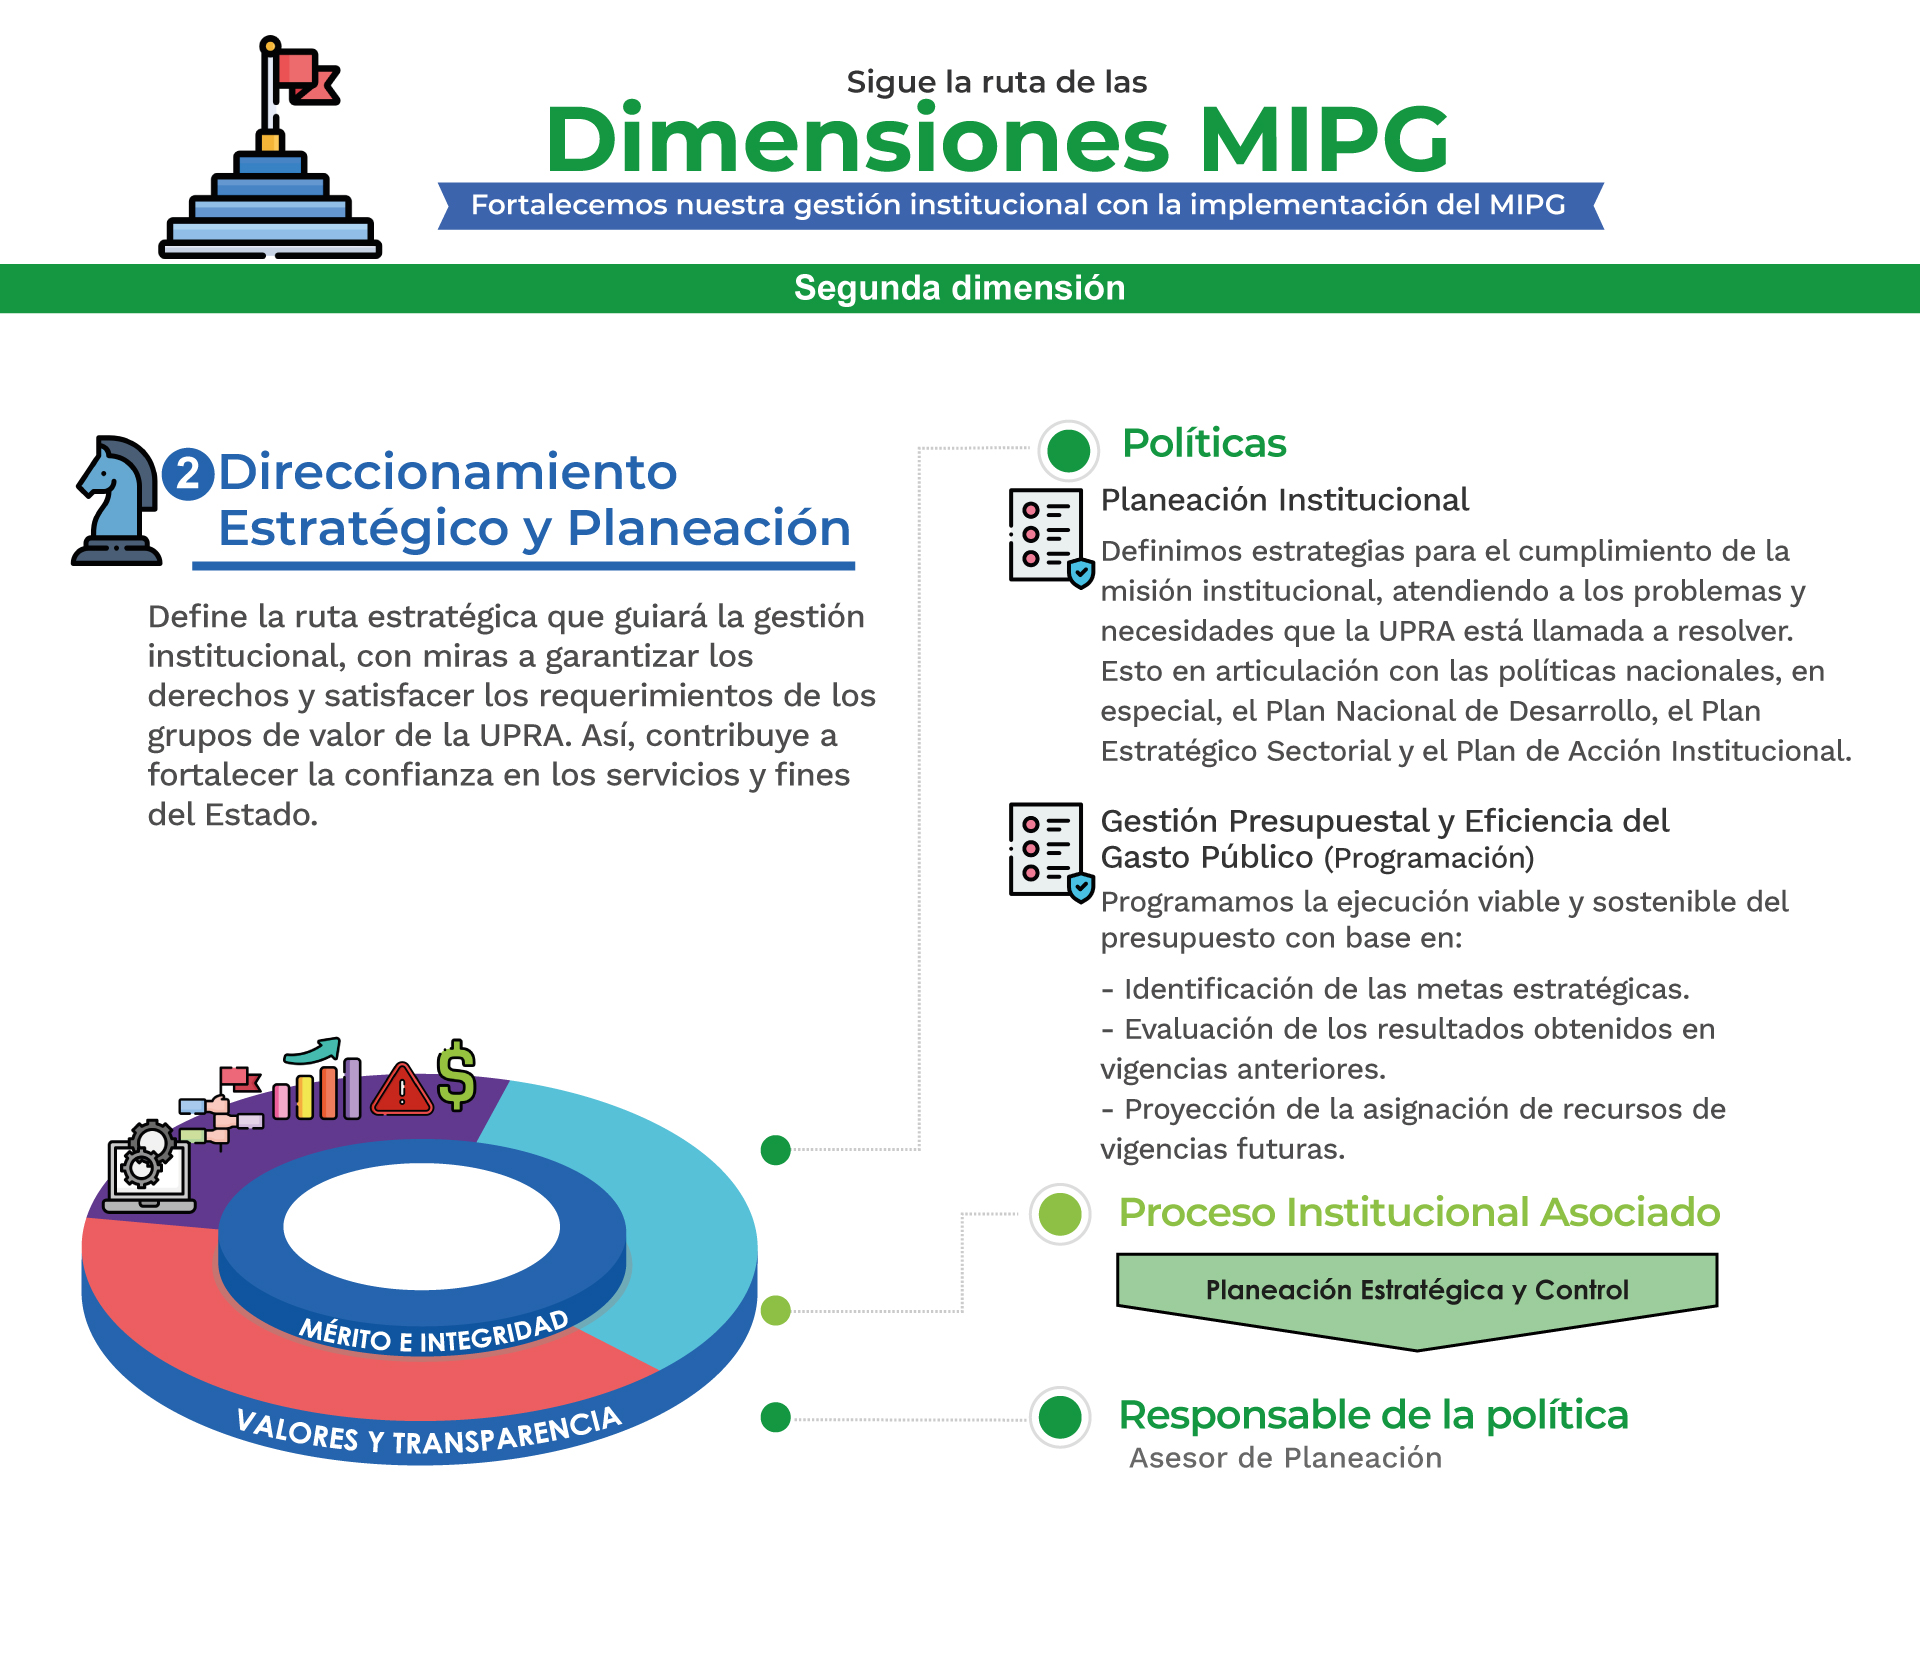 MPIG Direccionamiento estratégico y planeación